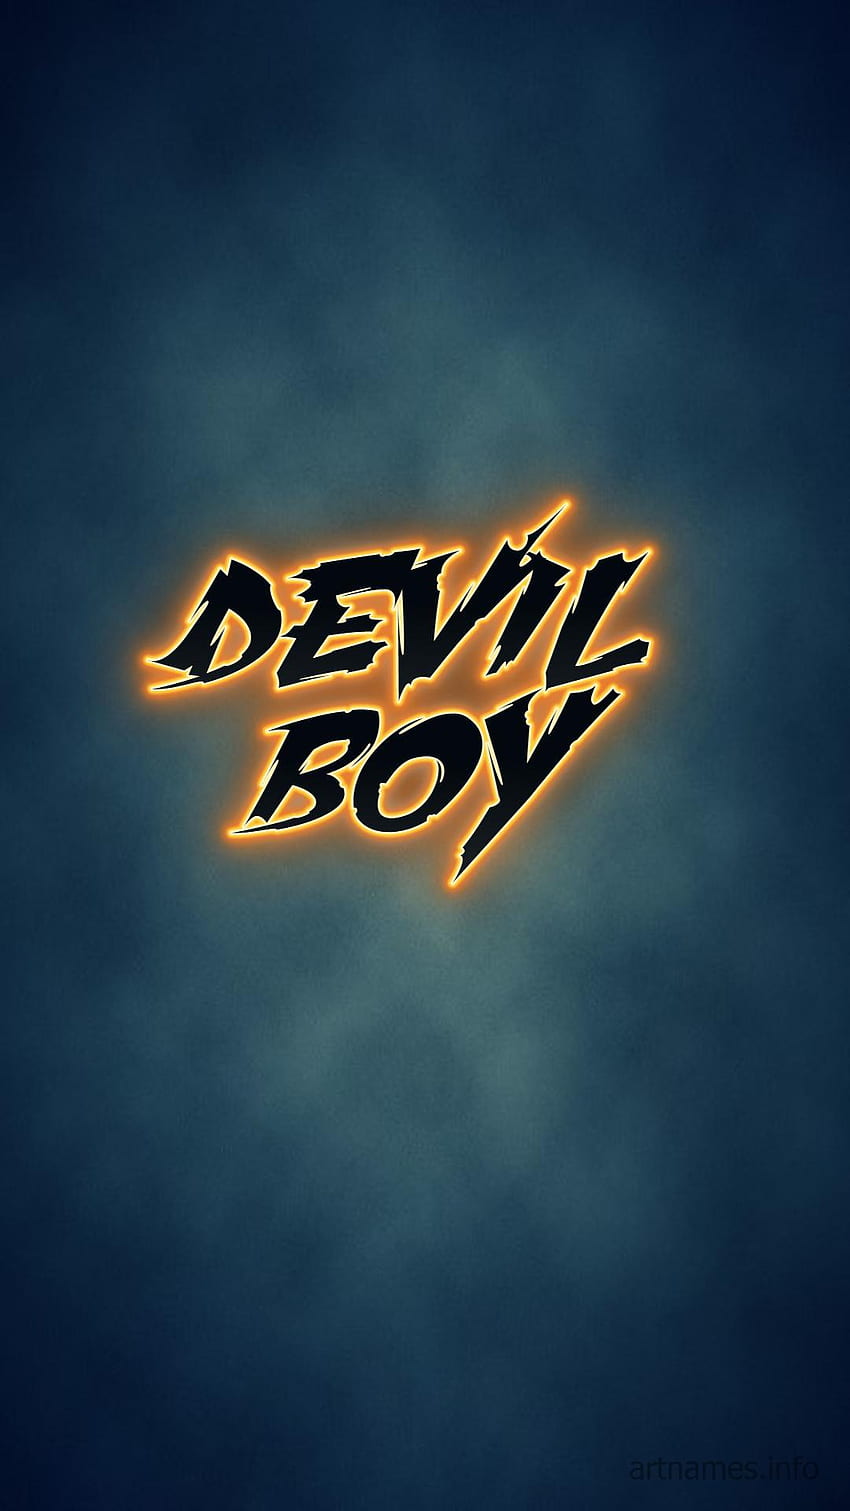 Devil boy HD wallpapers | Pxfuel